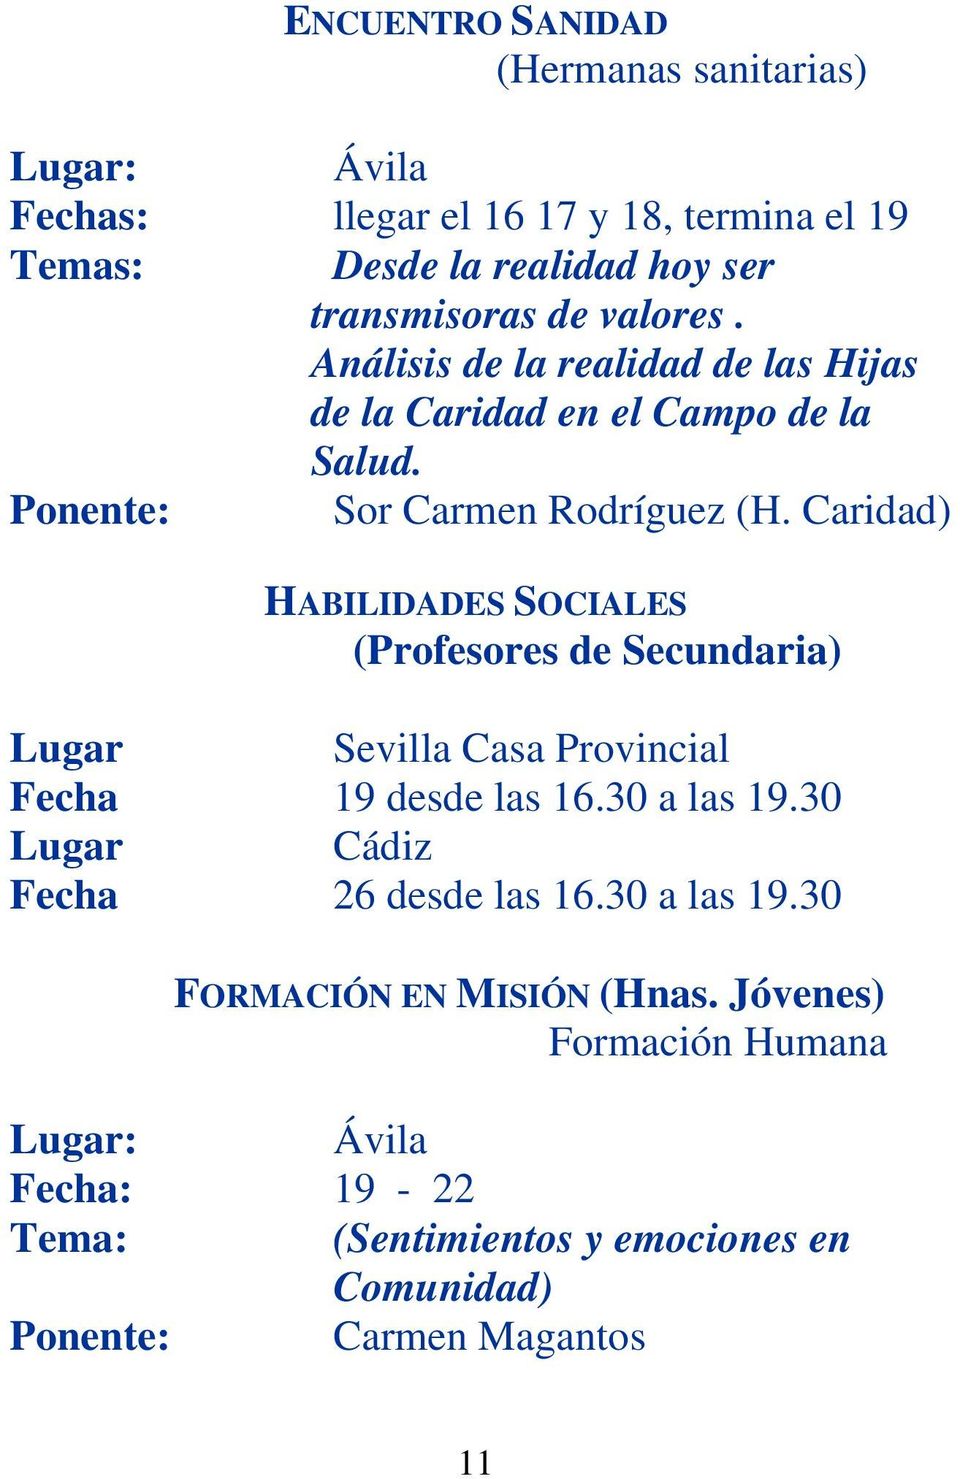 Caridad) HABILIDADES SOCIALES (Profesores de Secundaria) Lugar Sevilla Casa Provincial Fecha 19 desde las 16.30 a las 19.